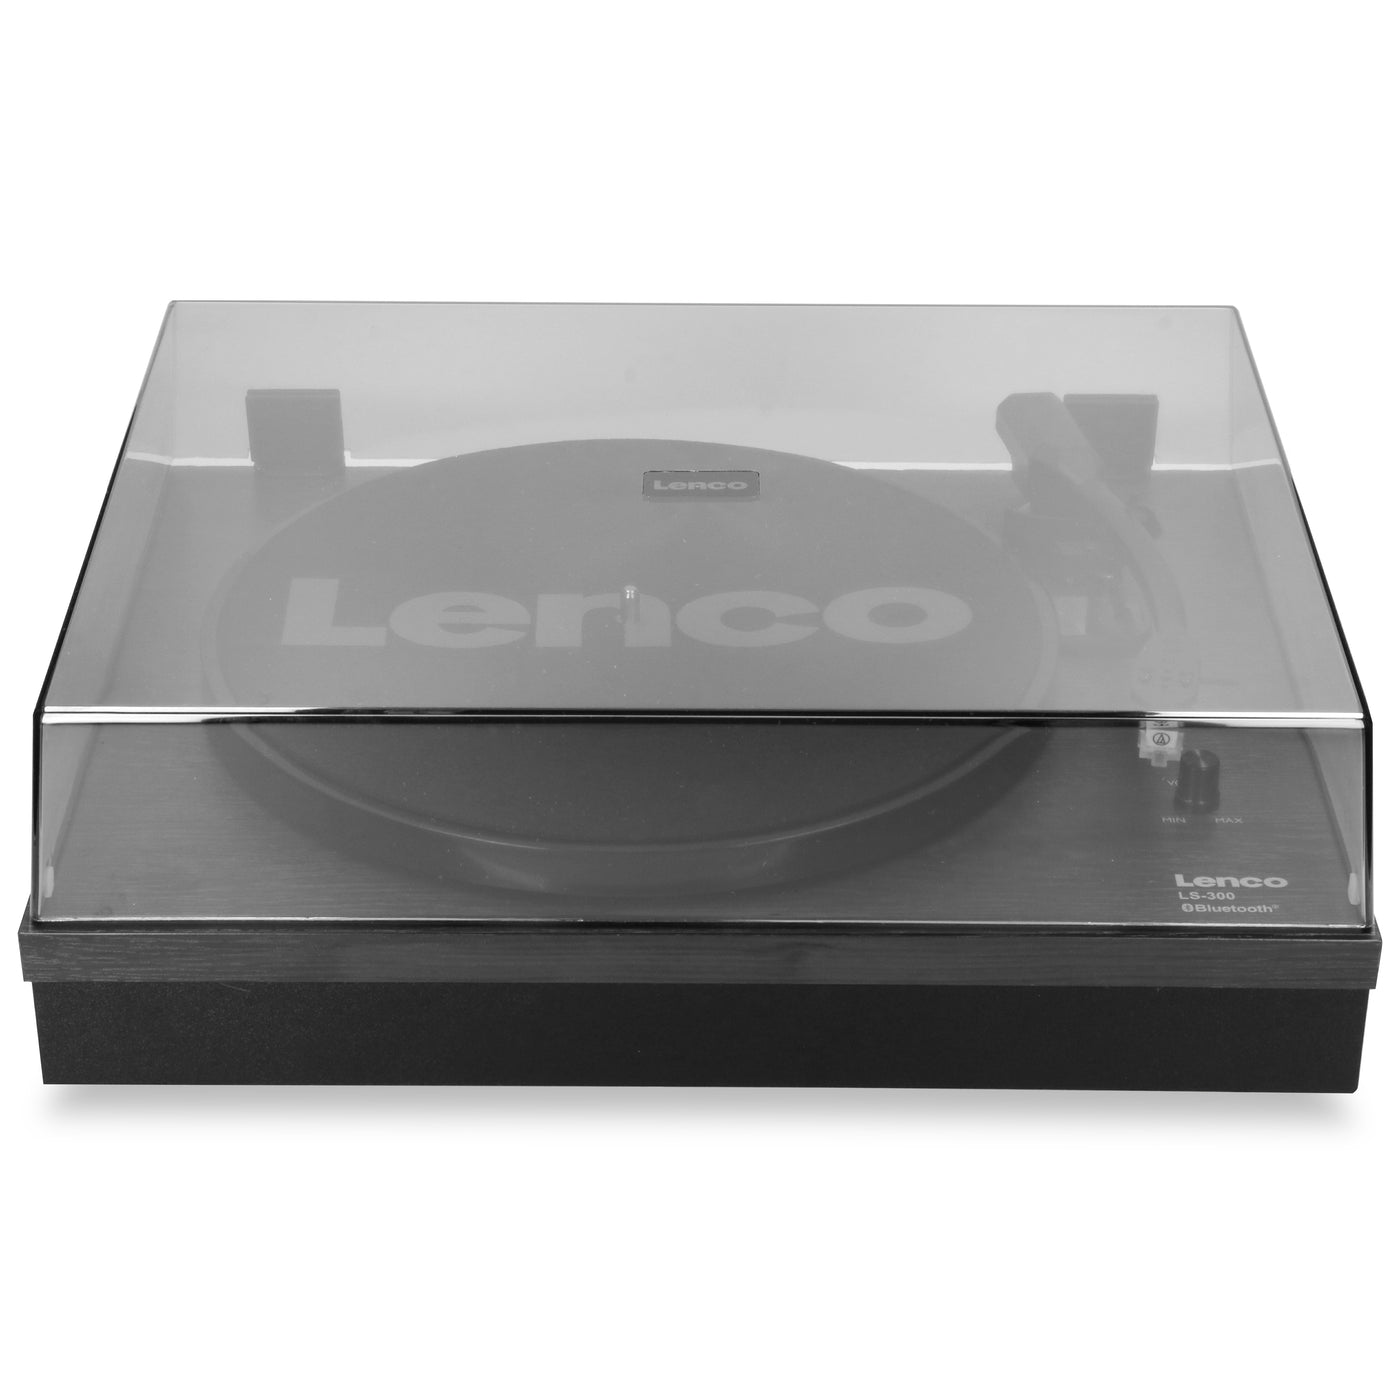 LENCO LS-300BK - Gramofon z Bluetooth® i dwoma osobnymi głośnikami, czarny